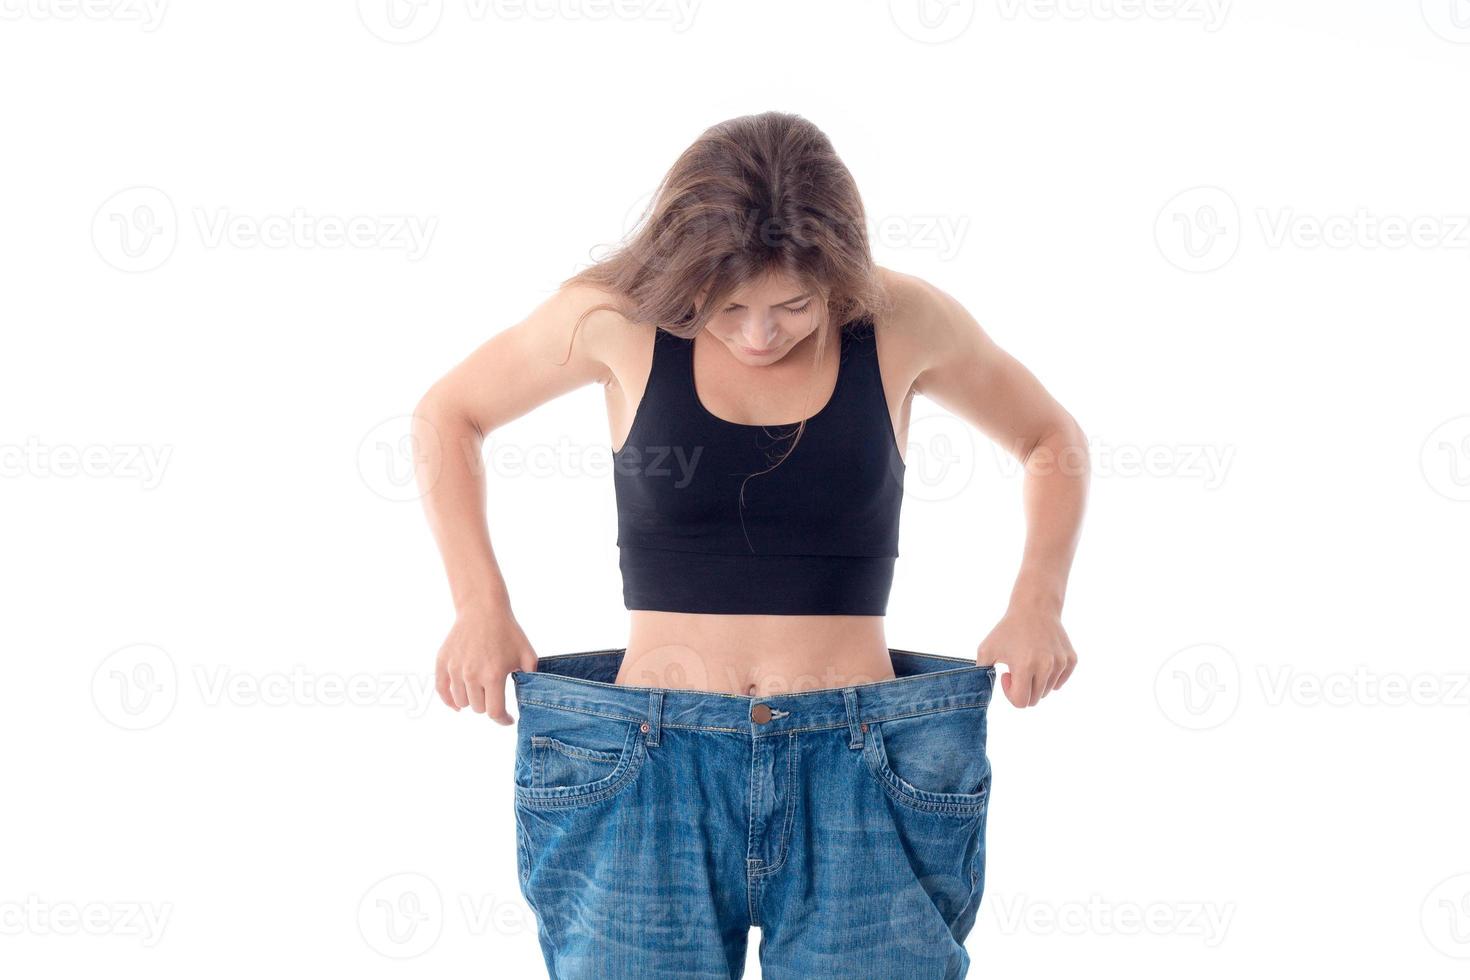 jovem esguia usa jeans grandes e largos foto